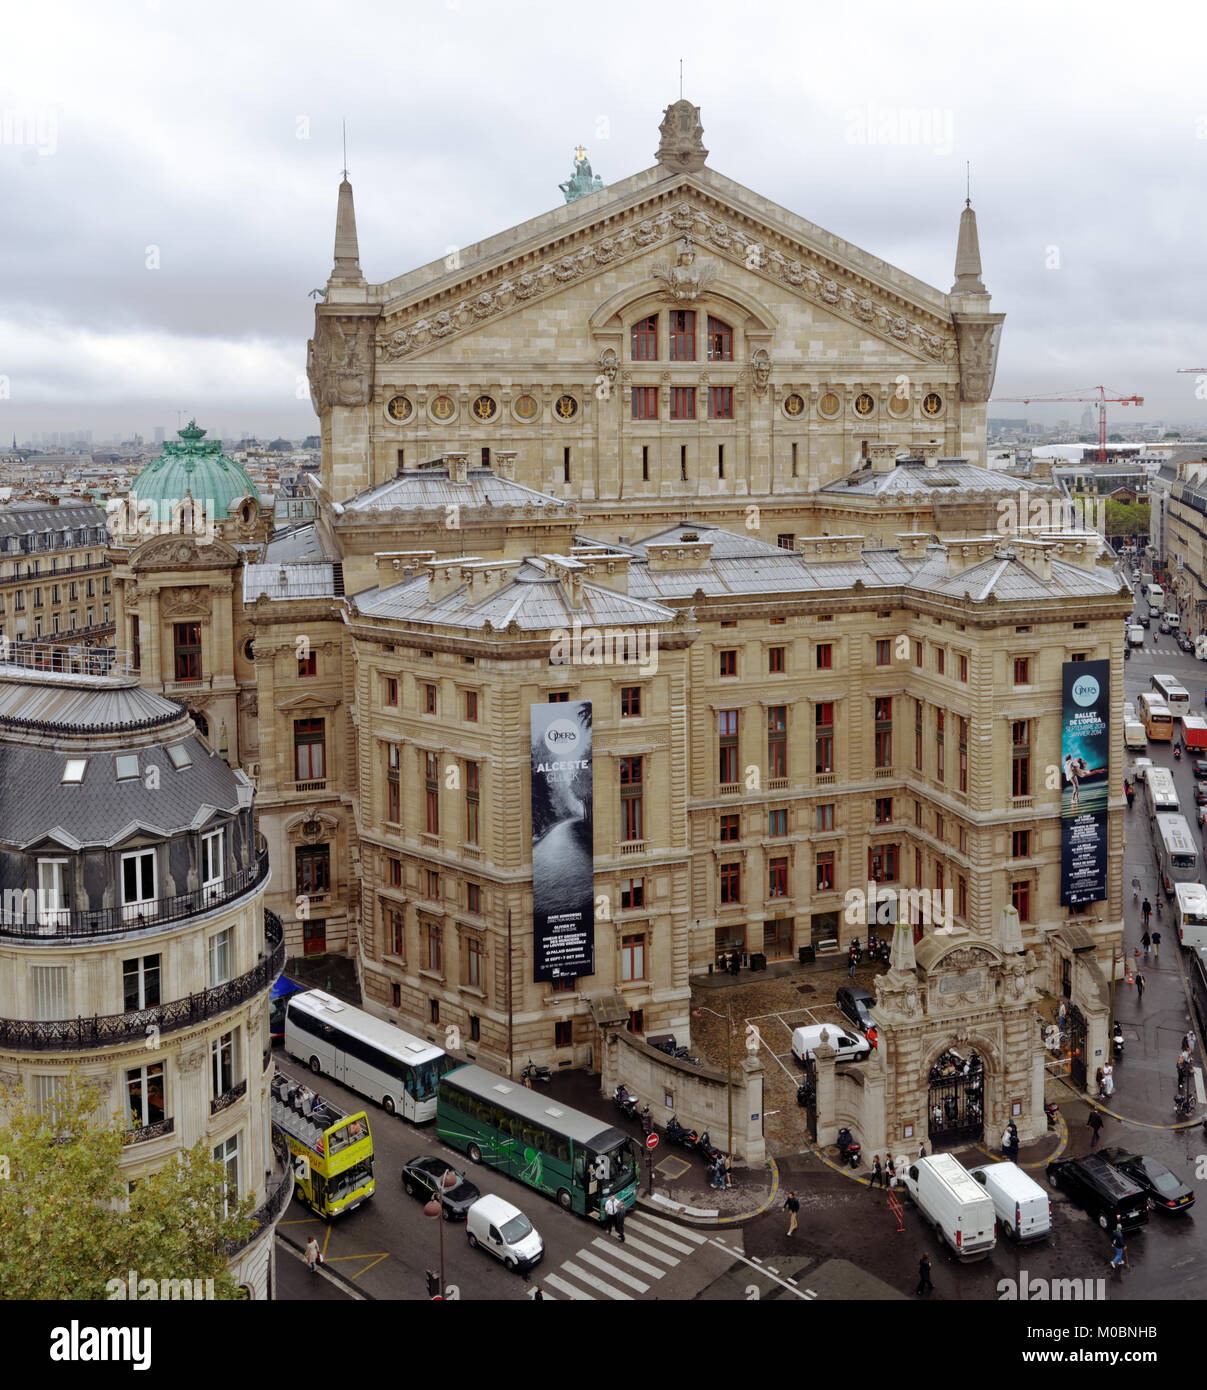 Paris, France - 13 septembre 2013 : Vue de Palais Garnier, un opéra de 1 979 places, construite en 1861-1875 pour l'Opéra de Paris. En maintenant principalement utilisé pour les ba Banque D'Images